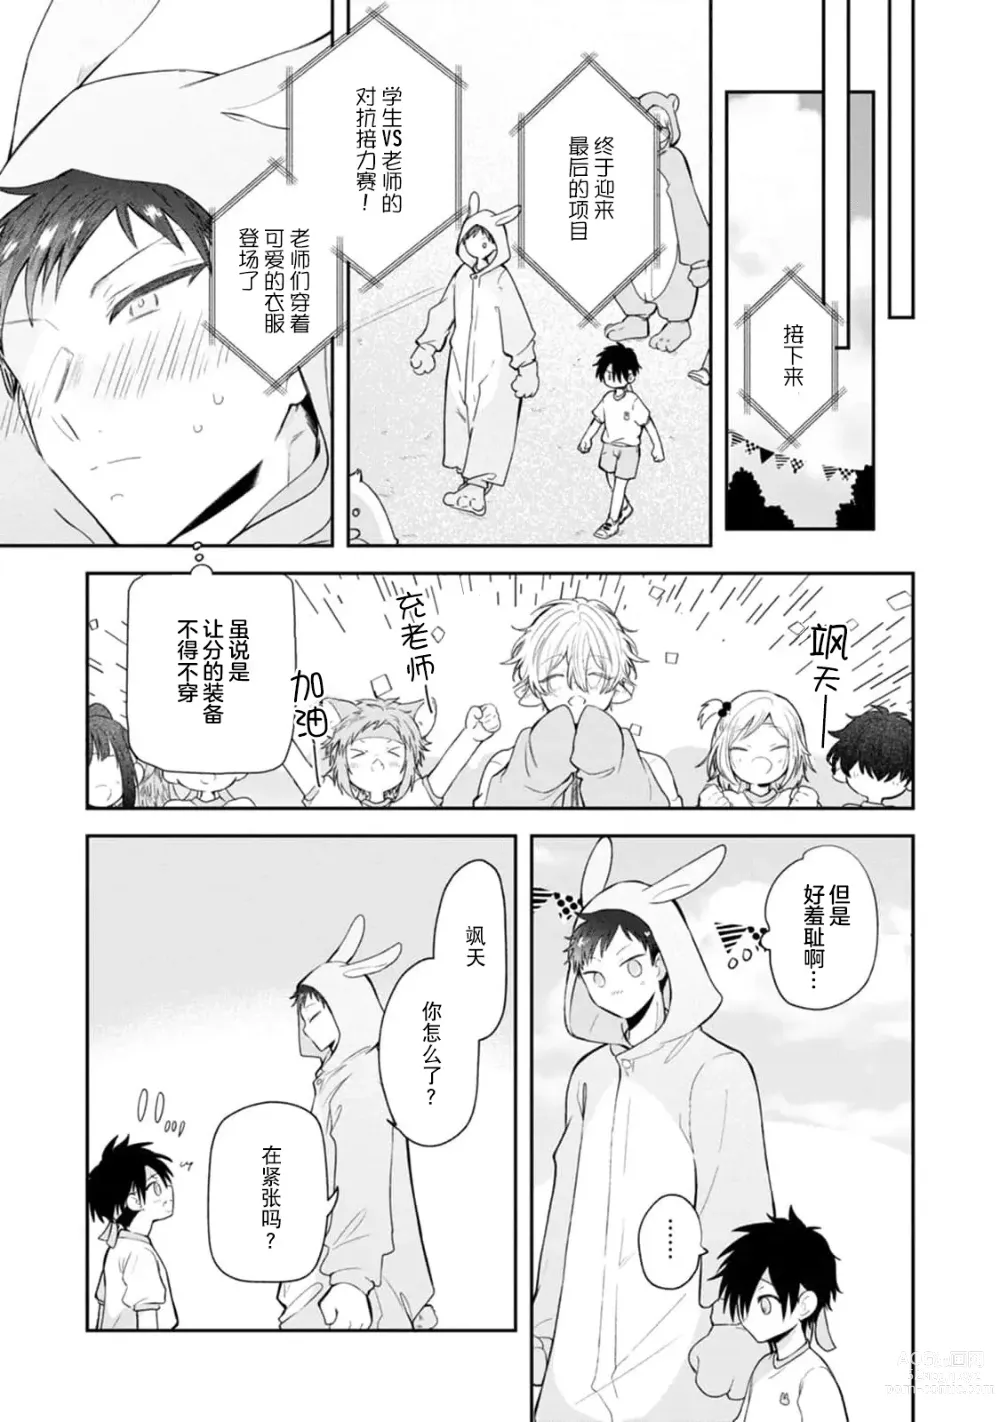 Page 131 of manga 叶羽老师全部是第一次 1-4